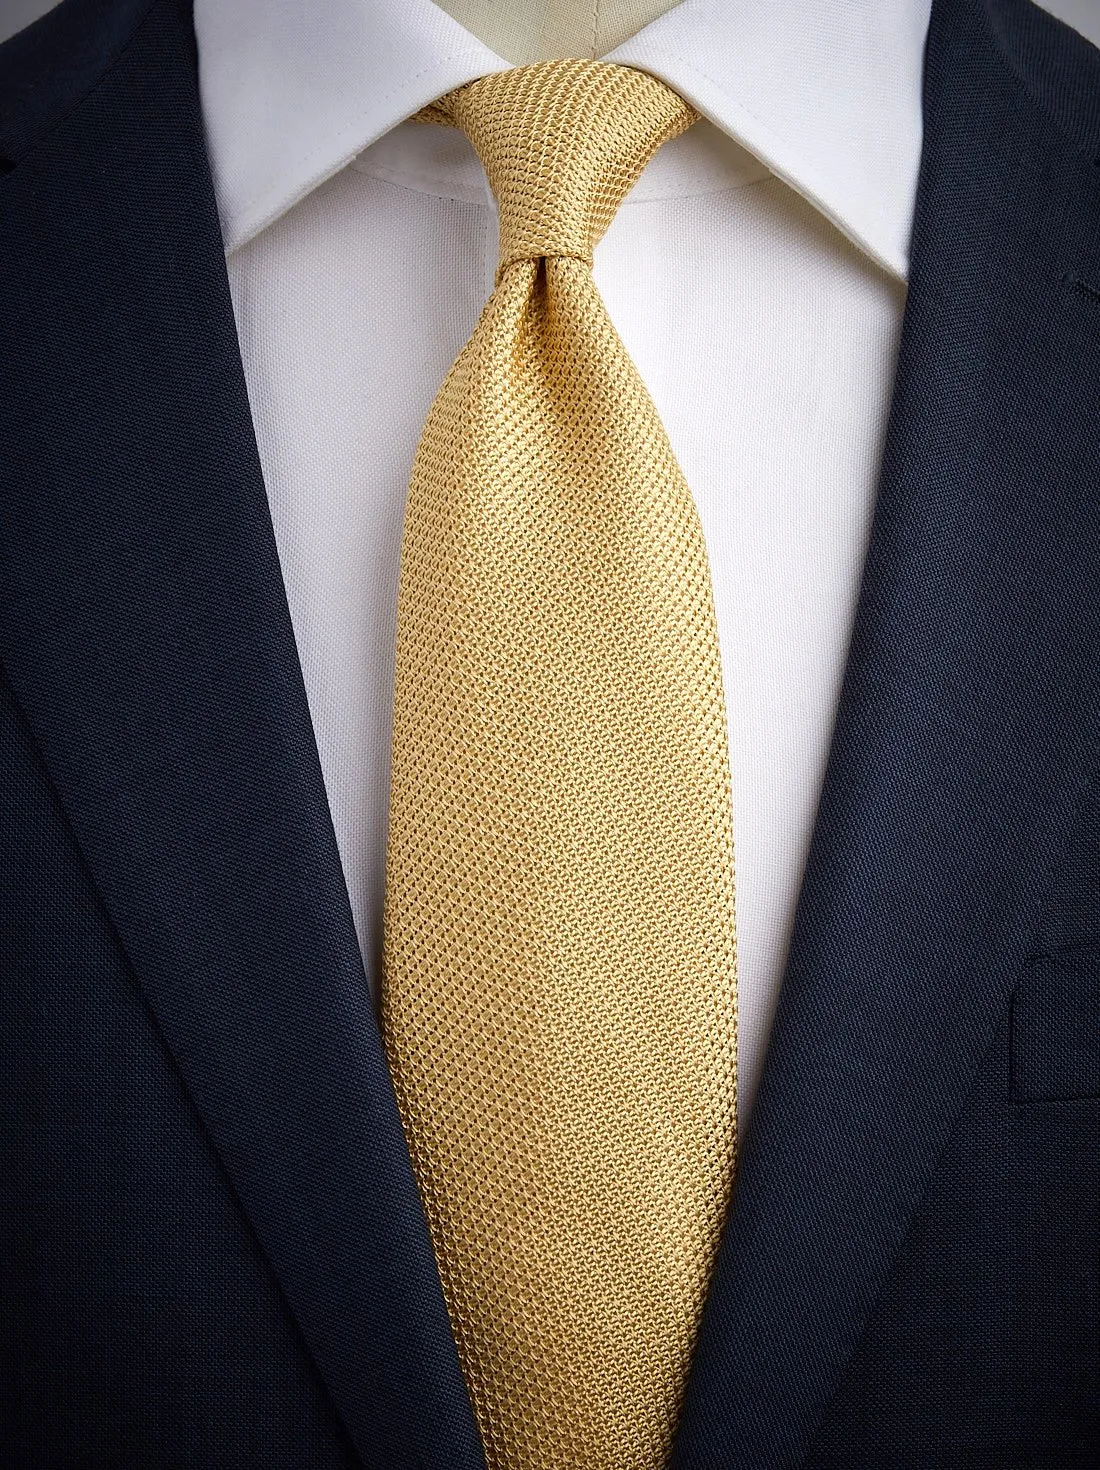 Yellow Grenadine Tie